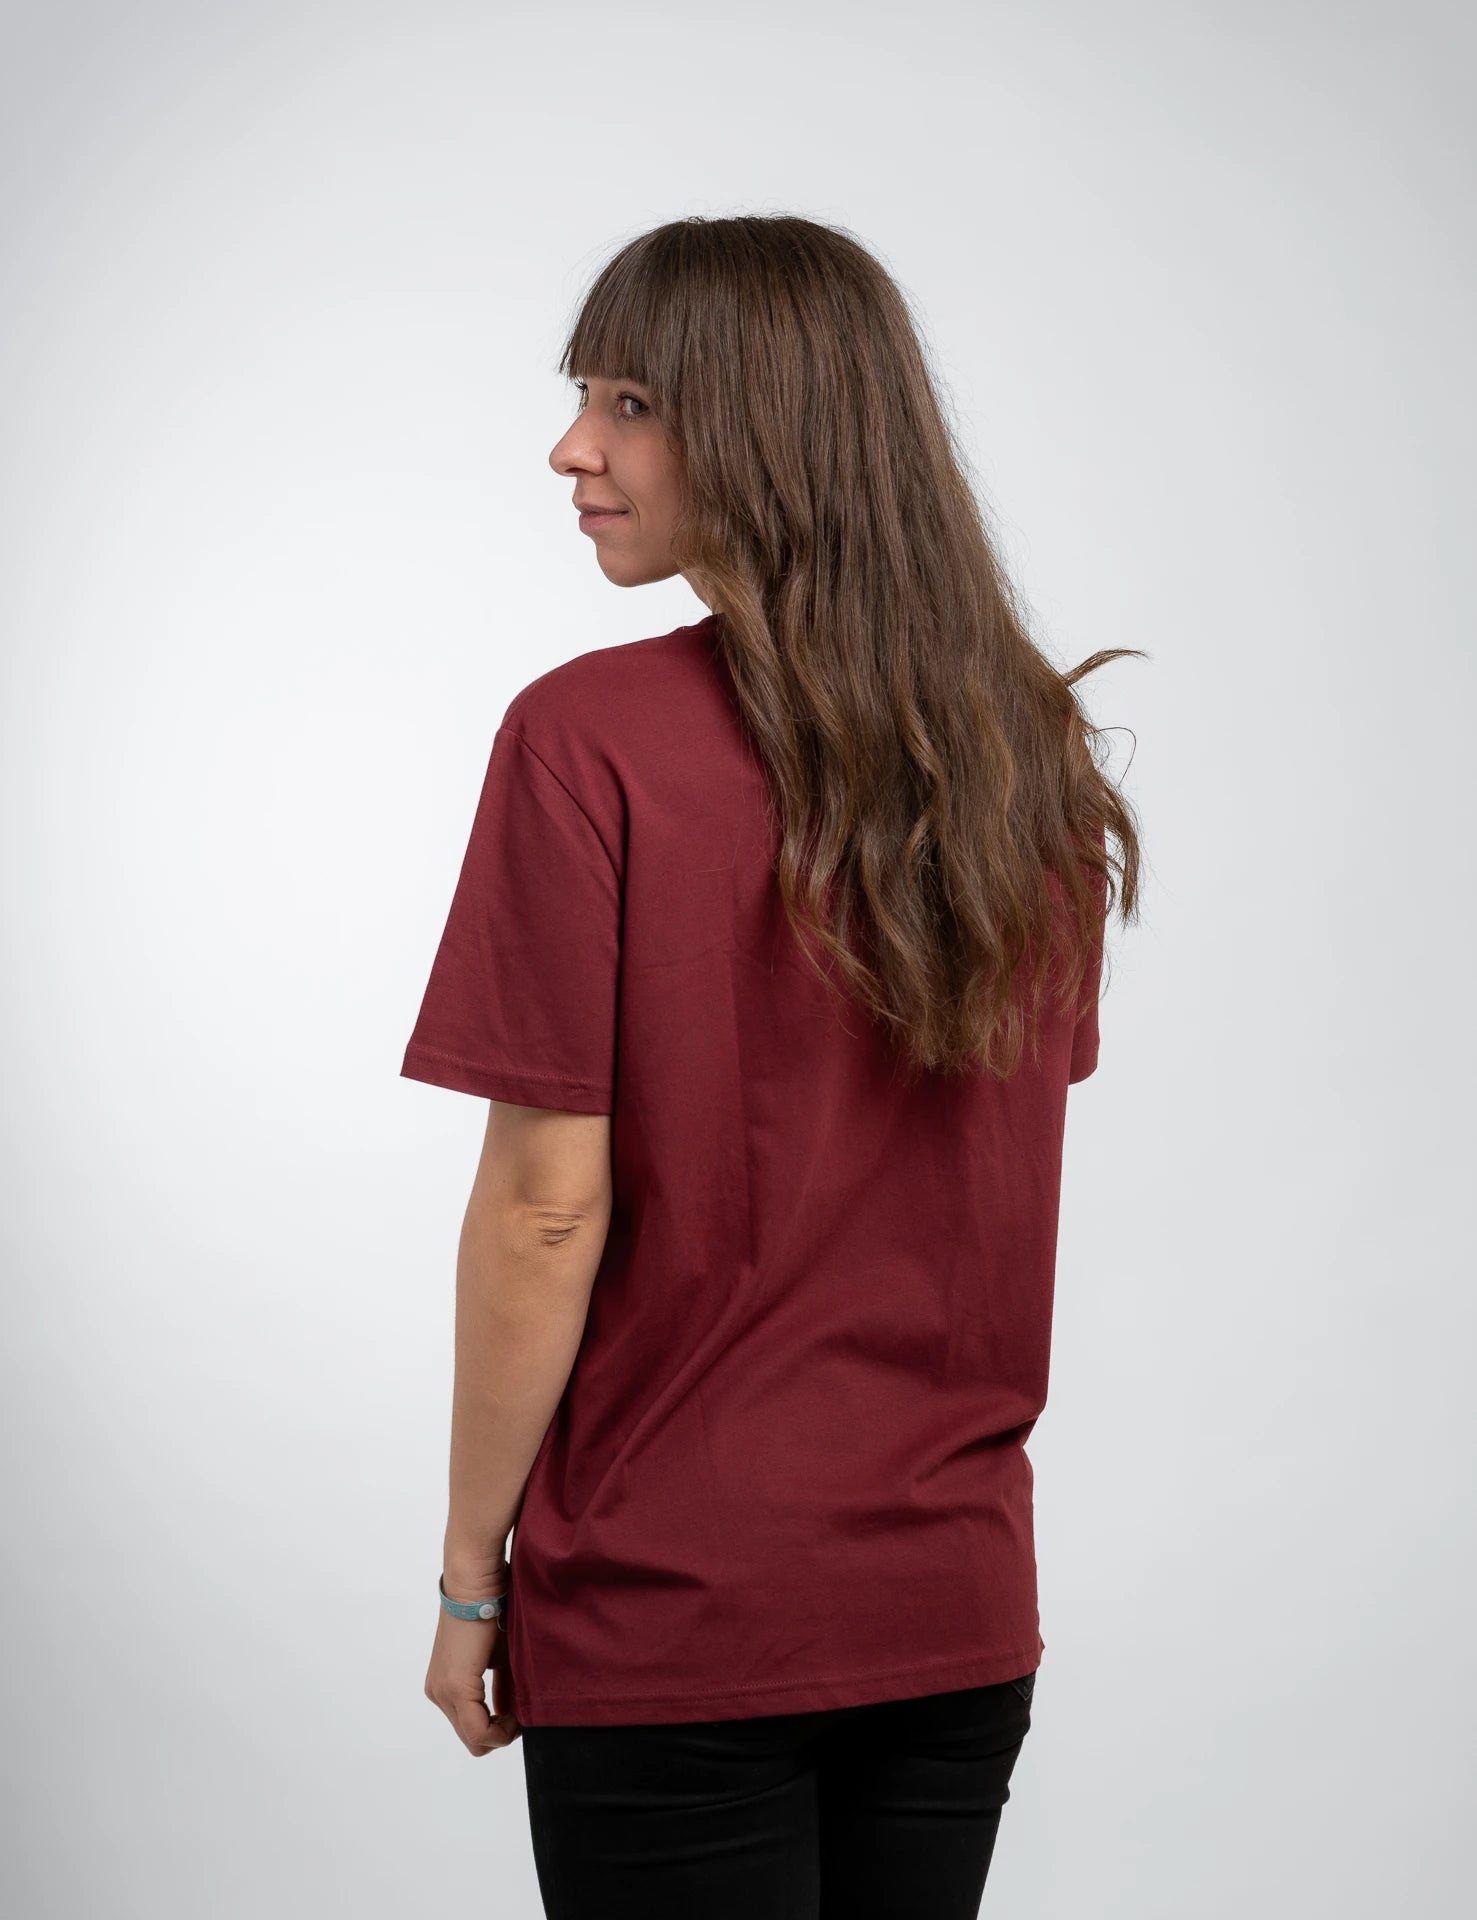 Ruby classic Bio-Baumwolle T-Shirt mit beigen, 1d totry Stick auf der Brust.